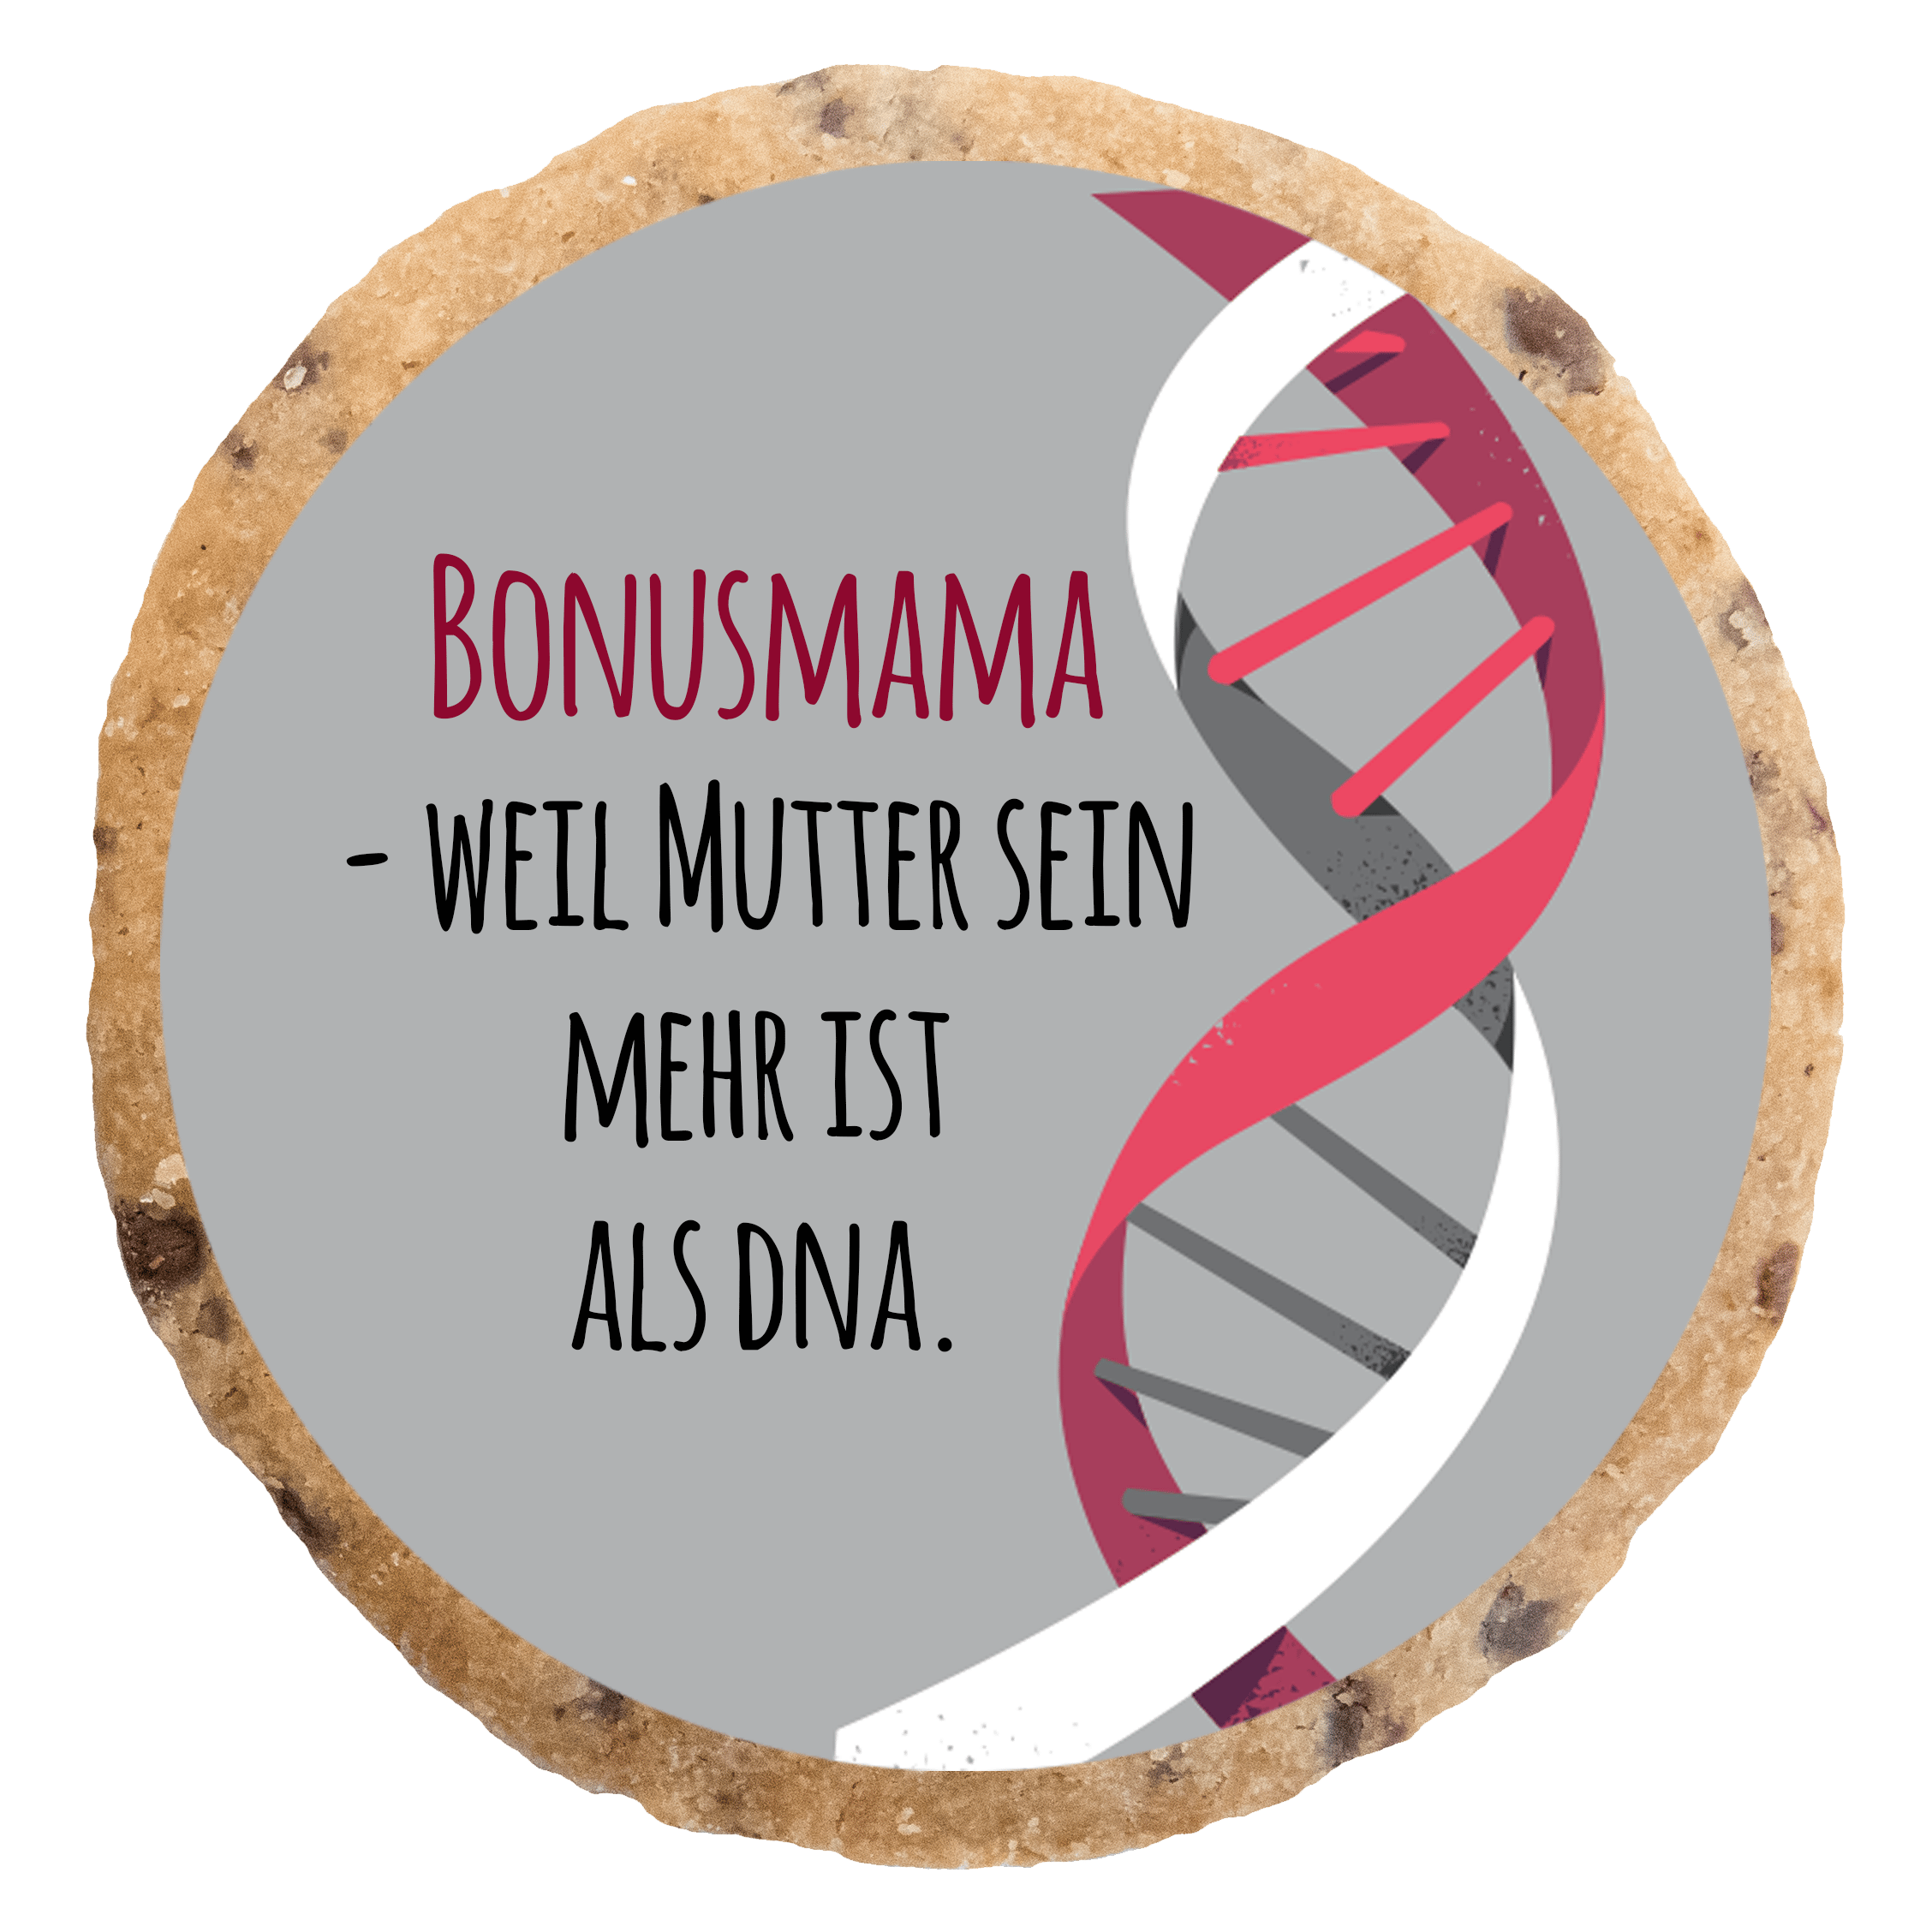 "Mehr als DNA" MotivKEKS